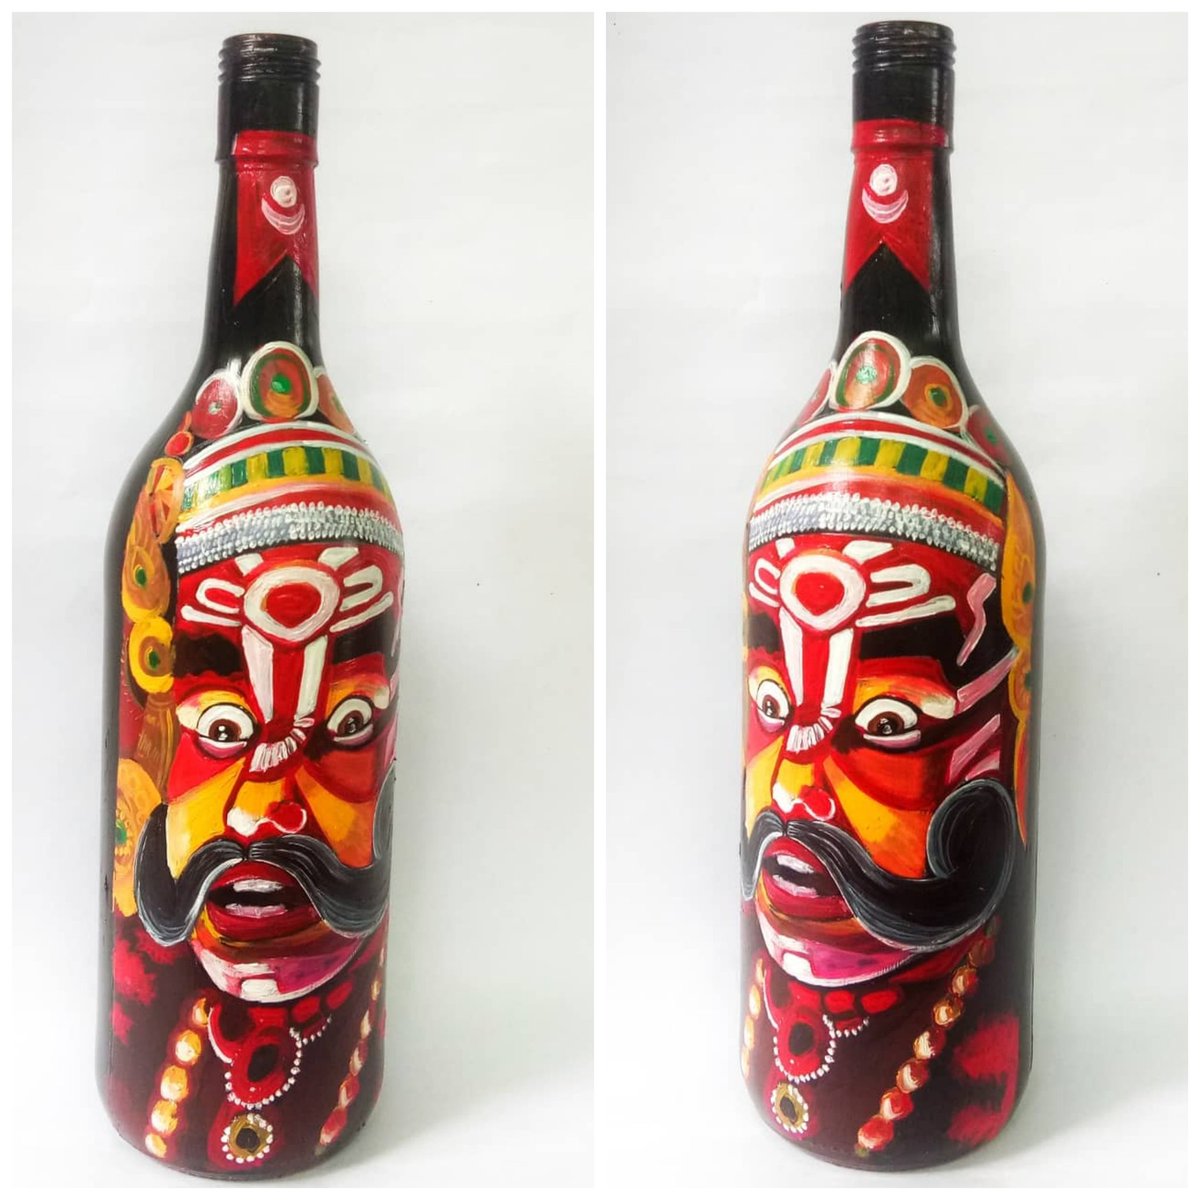 #bottleart  #customizedwork 
#tulunadu #tuluoffficialinKA_KL
#tuluvas #TuluFlag
⬇️⬇️⬇️⬇️⬇️⬇️⬇️⬇️⬇️⬇️
📢Shipping FREE
⬇️⬇️⬇️⬇️⬇️⬇️⬇️⬇️⬇️⬇️
DM💬 for price enquiry 
📳9645918981